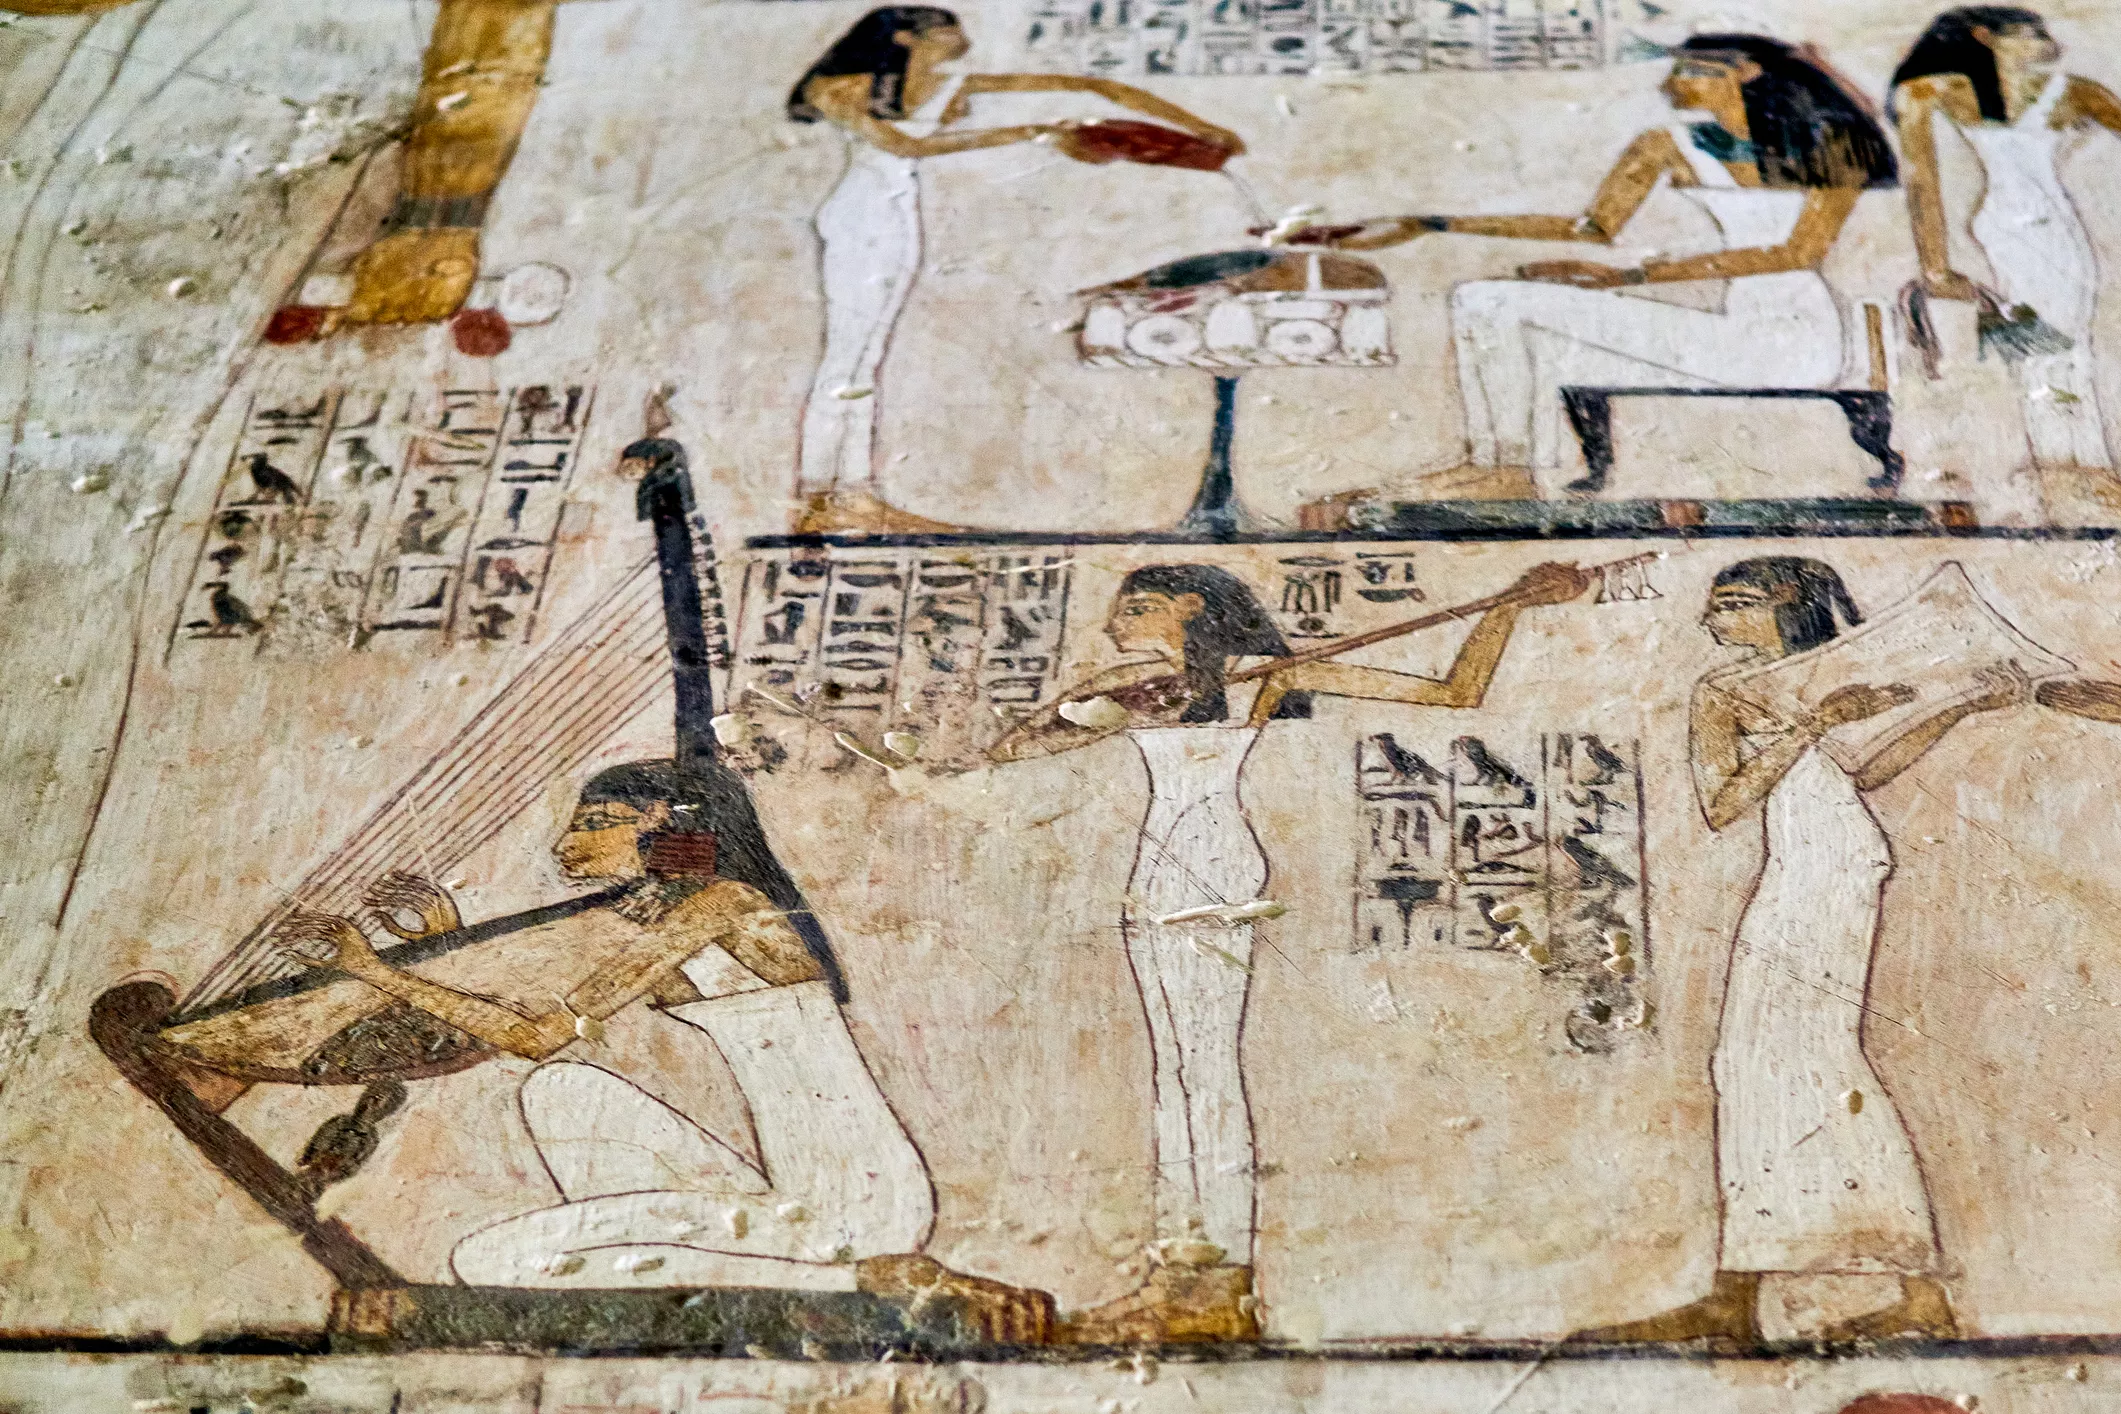 Els músics de l’antic Egipte tenien un paper cabdal en el culte als temples i els rituals funeraris